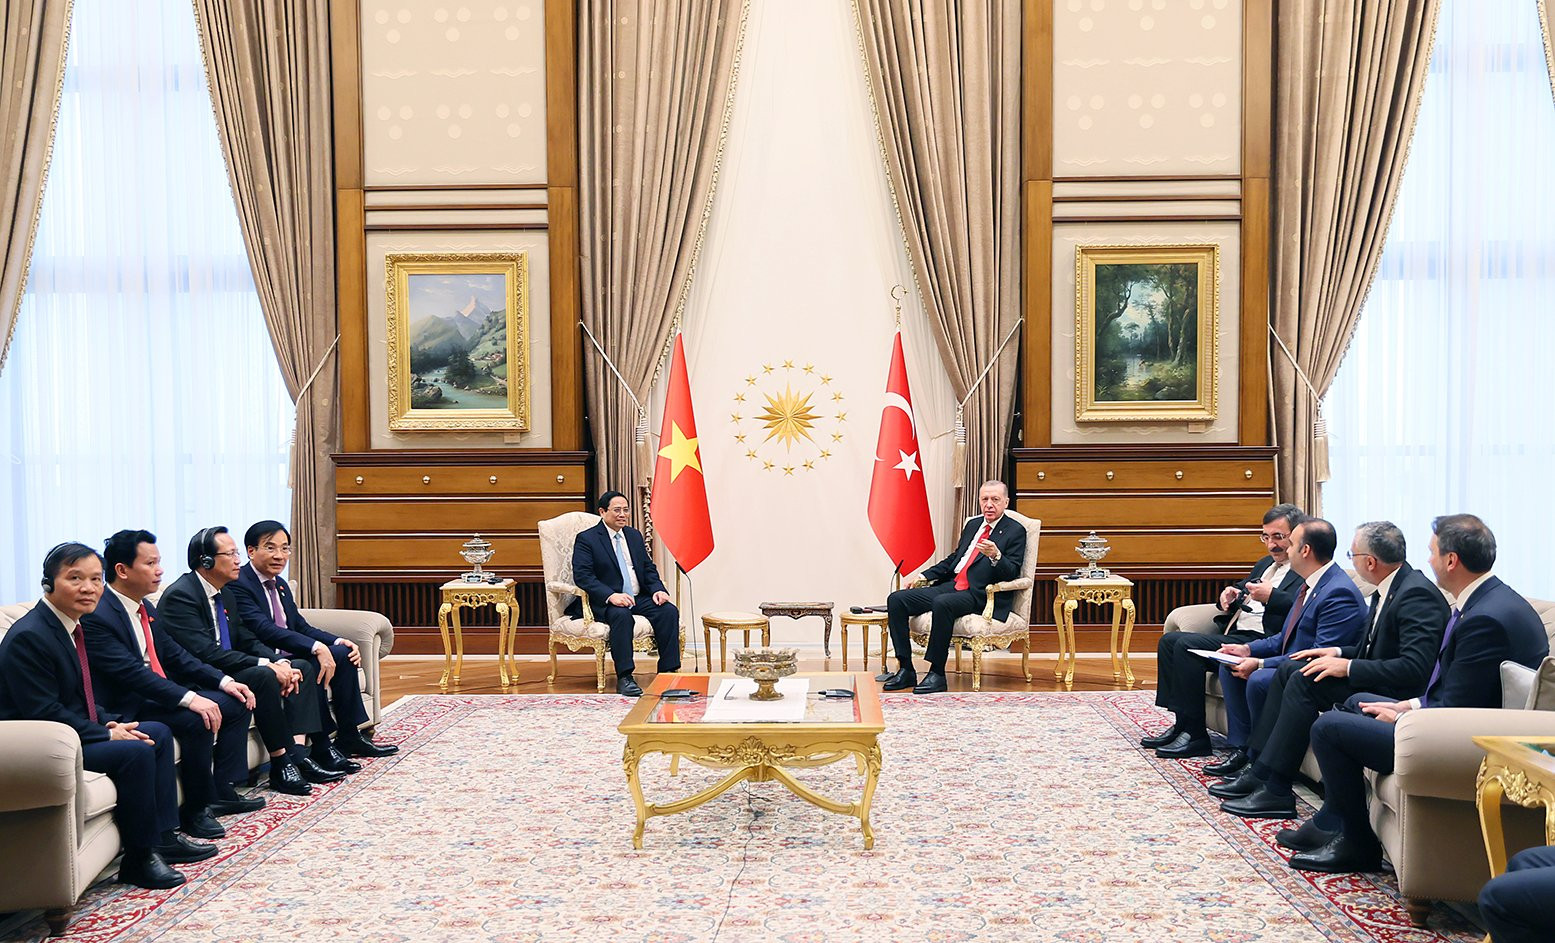 Tổng thống Thổ Nhĩ Kỳ: Chuyến thăm của Thủ tướng Phạm Minh Chính mở ra kỷ nguyên mới trong quan hệ hai nước- Ảnh 3.